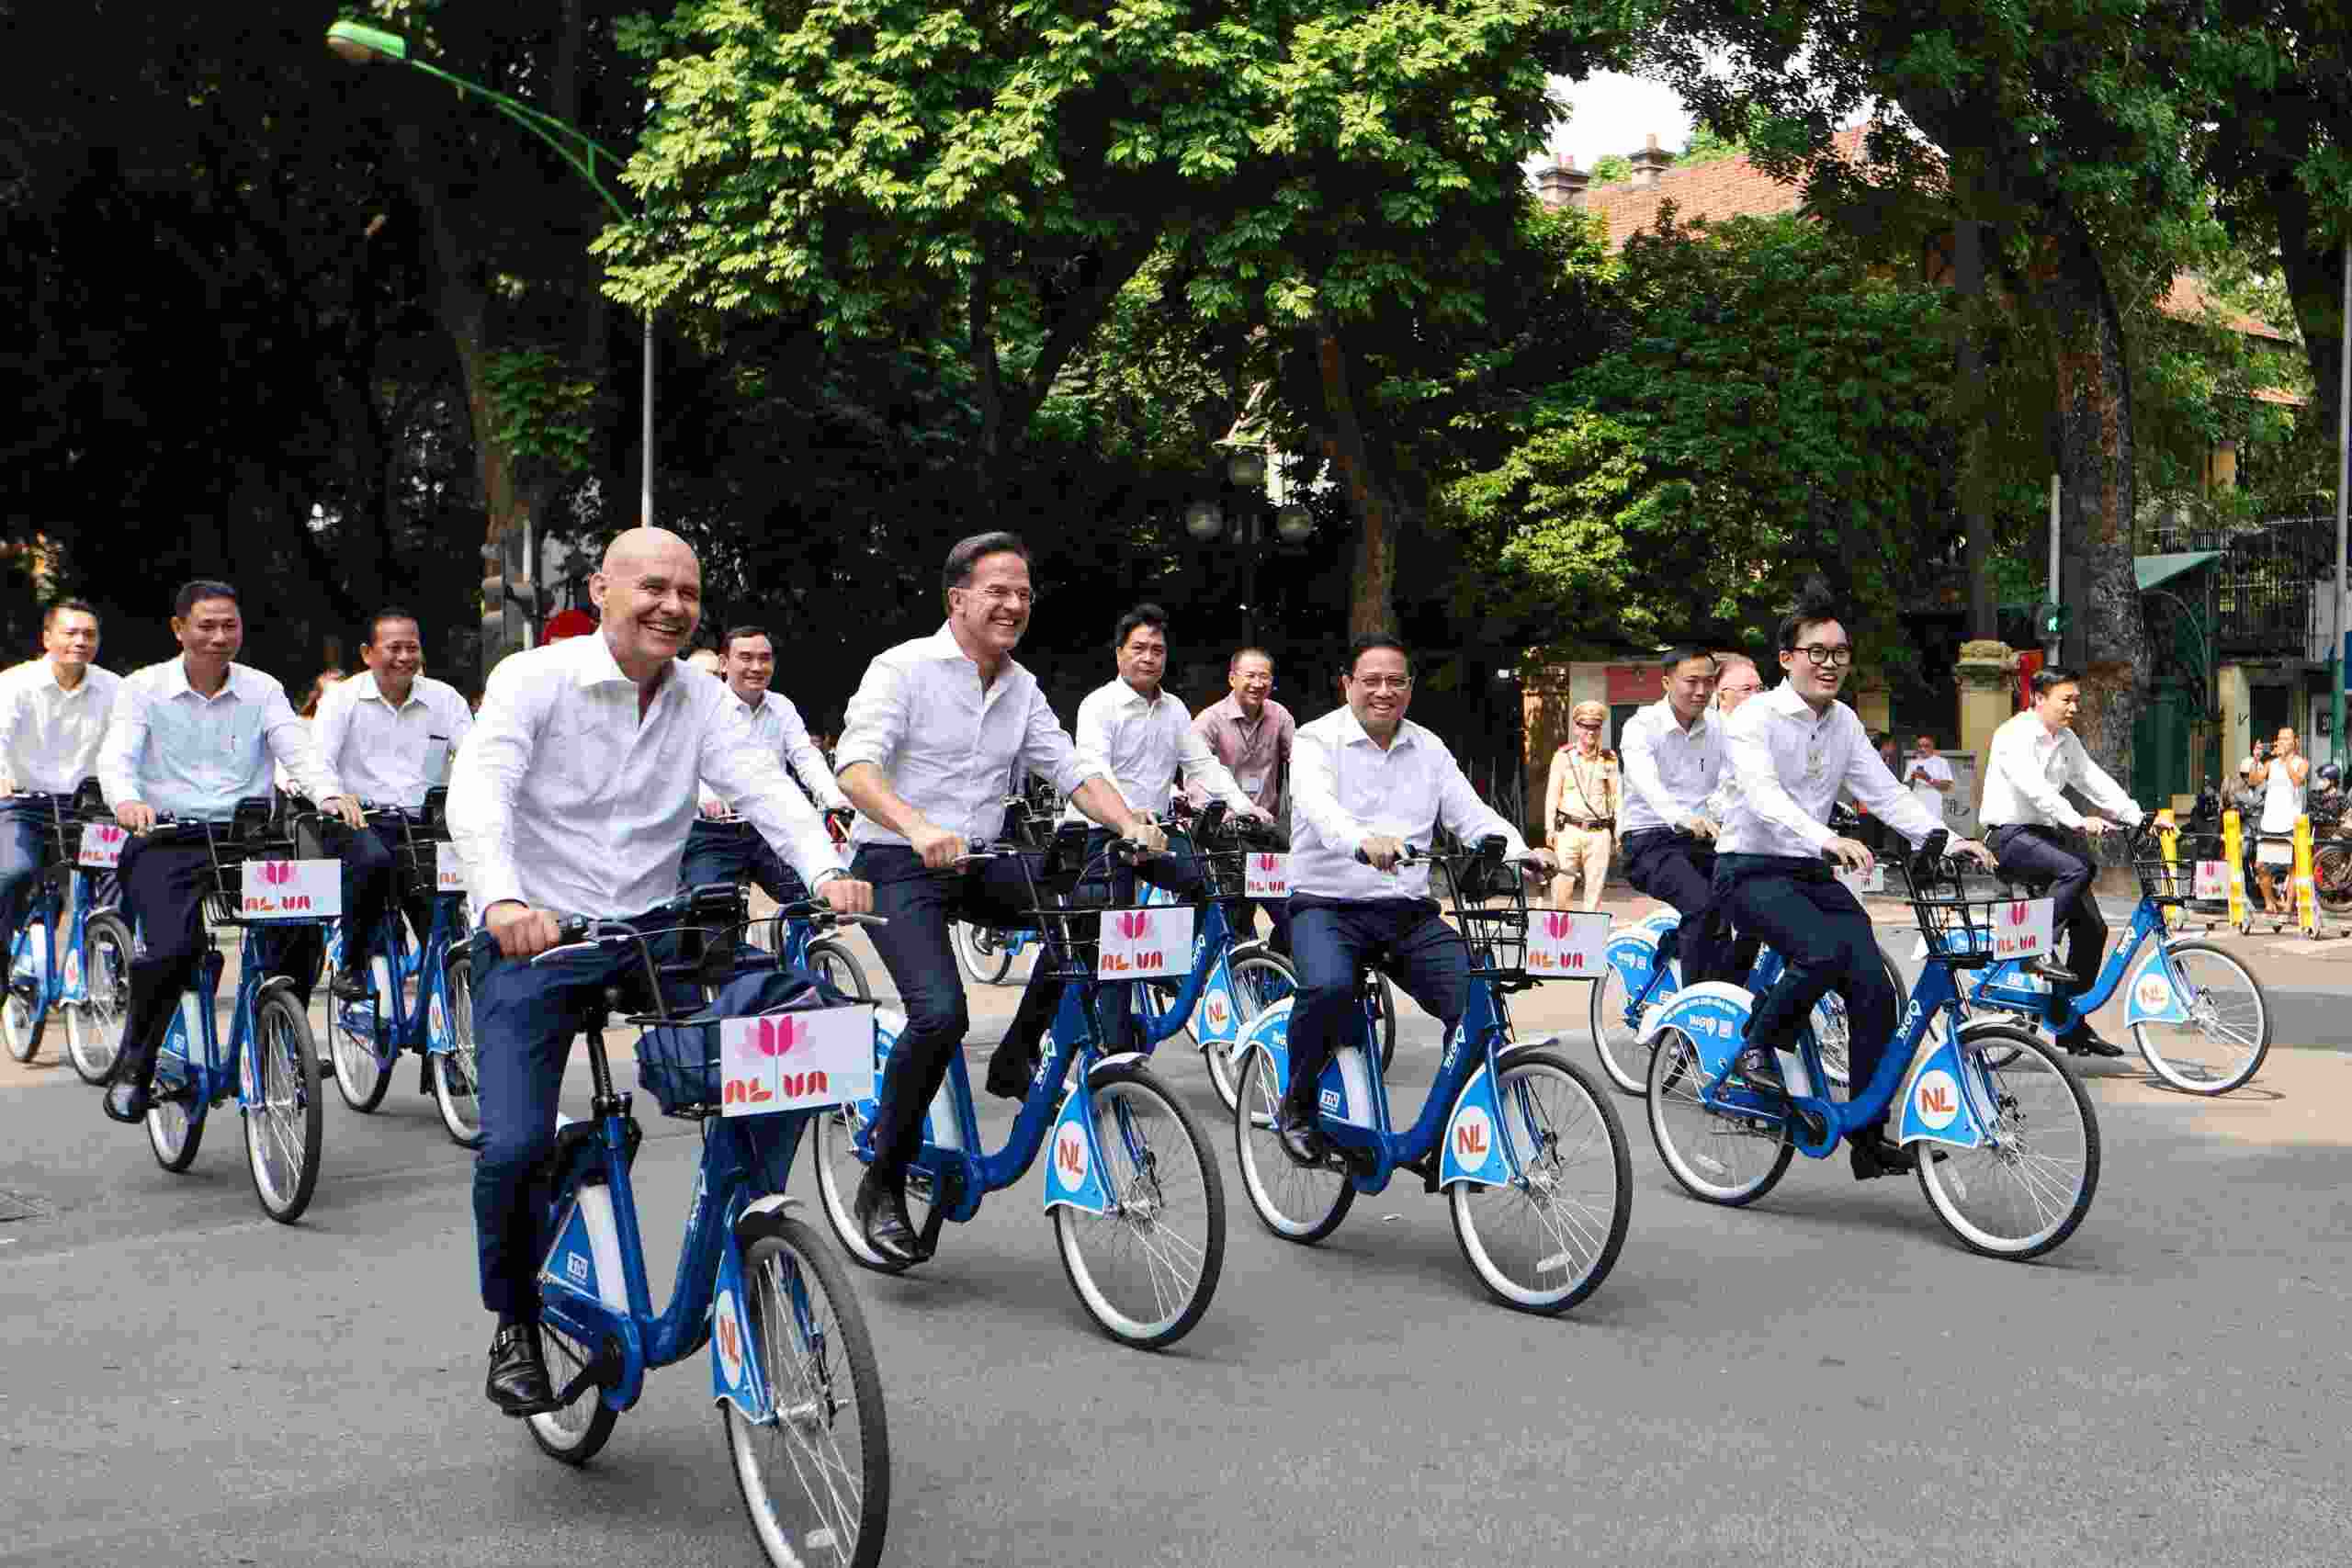 Thủ tướng Chính phủ Phạm Minh Chính và Thủ tướng Hà Lan Mark Rutte cùng đạp xe trên cung đường qua các phố xung quanh khu vực Hoàng thành Thăng Long. Ảnh: Hải Nguyễn